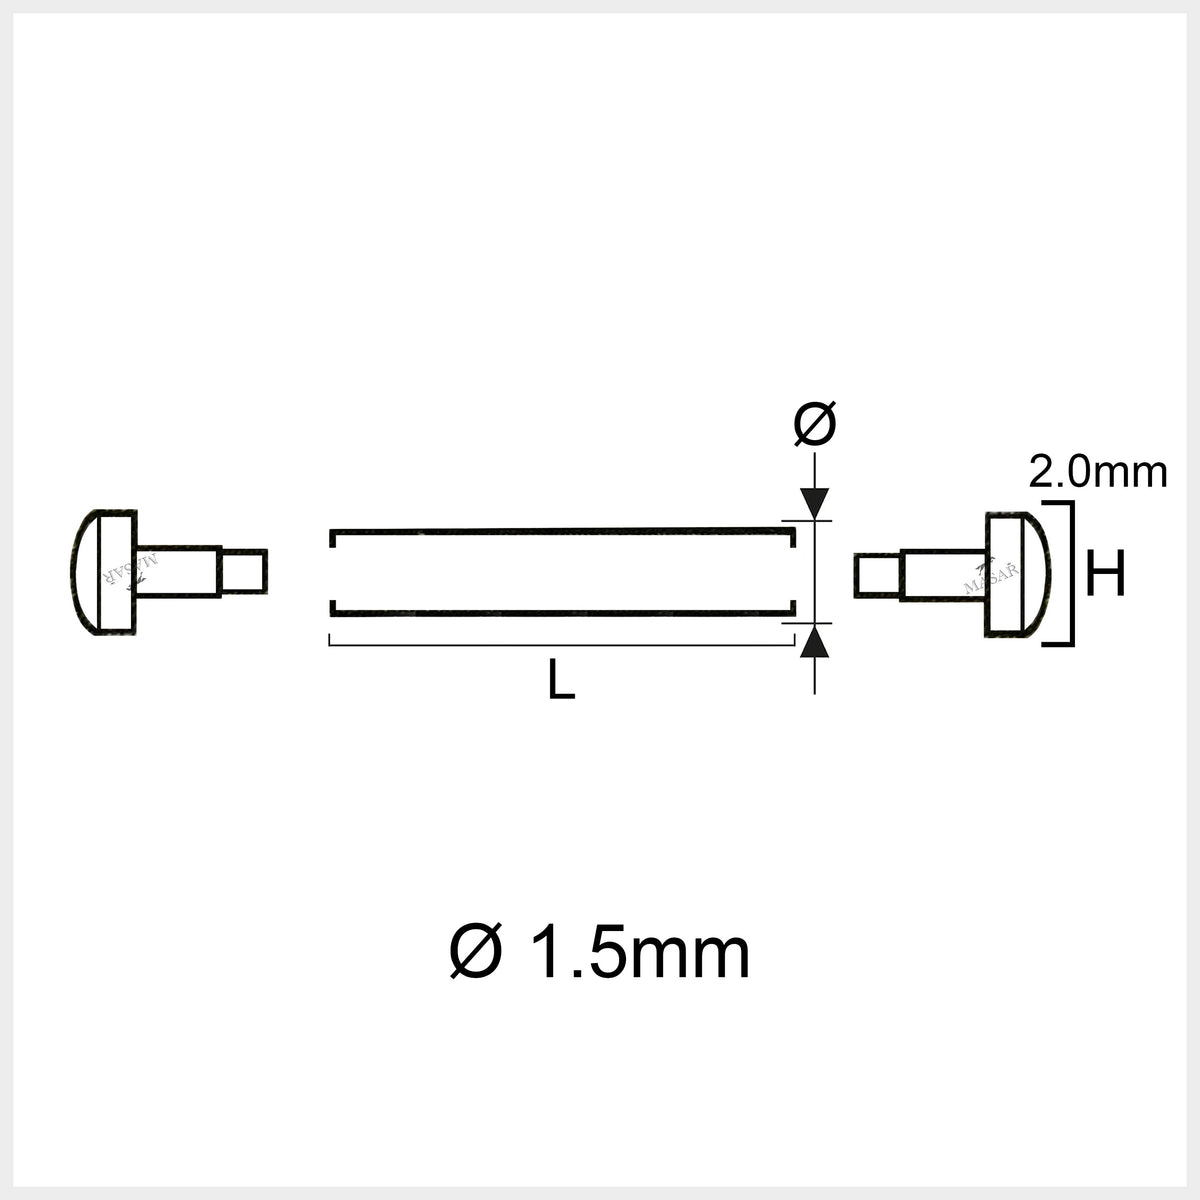 10mm à 30mm Ø 1.5mm Pins with Tubes Raccords – Rivets, Barres de pression du bracelet - Lot de 2 Pcs